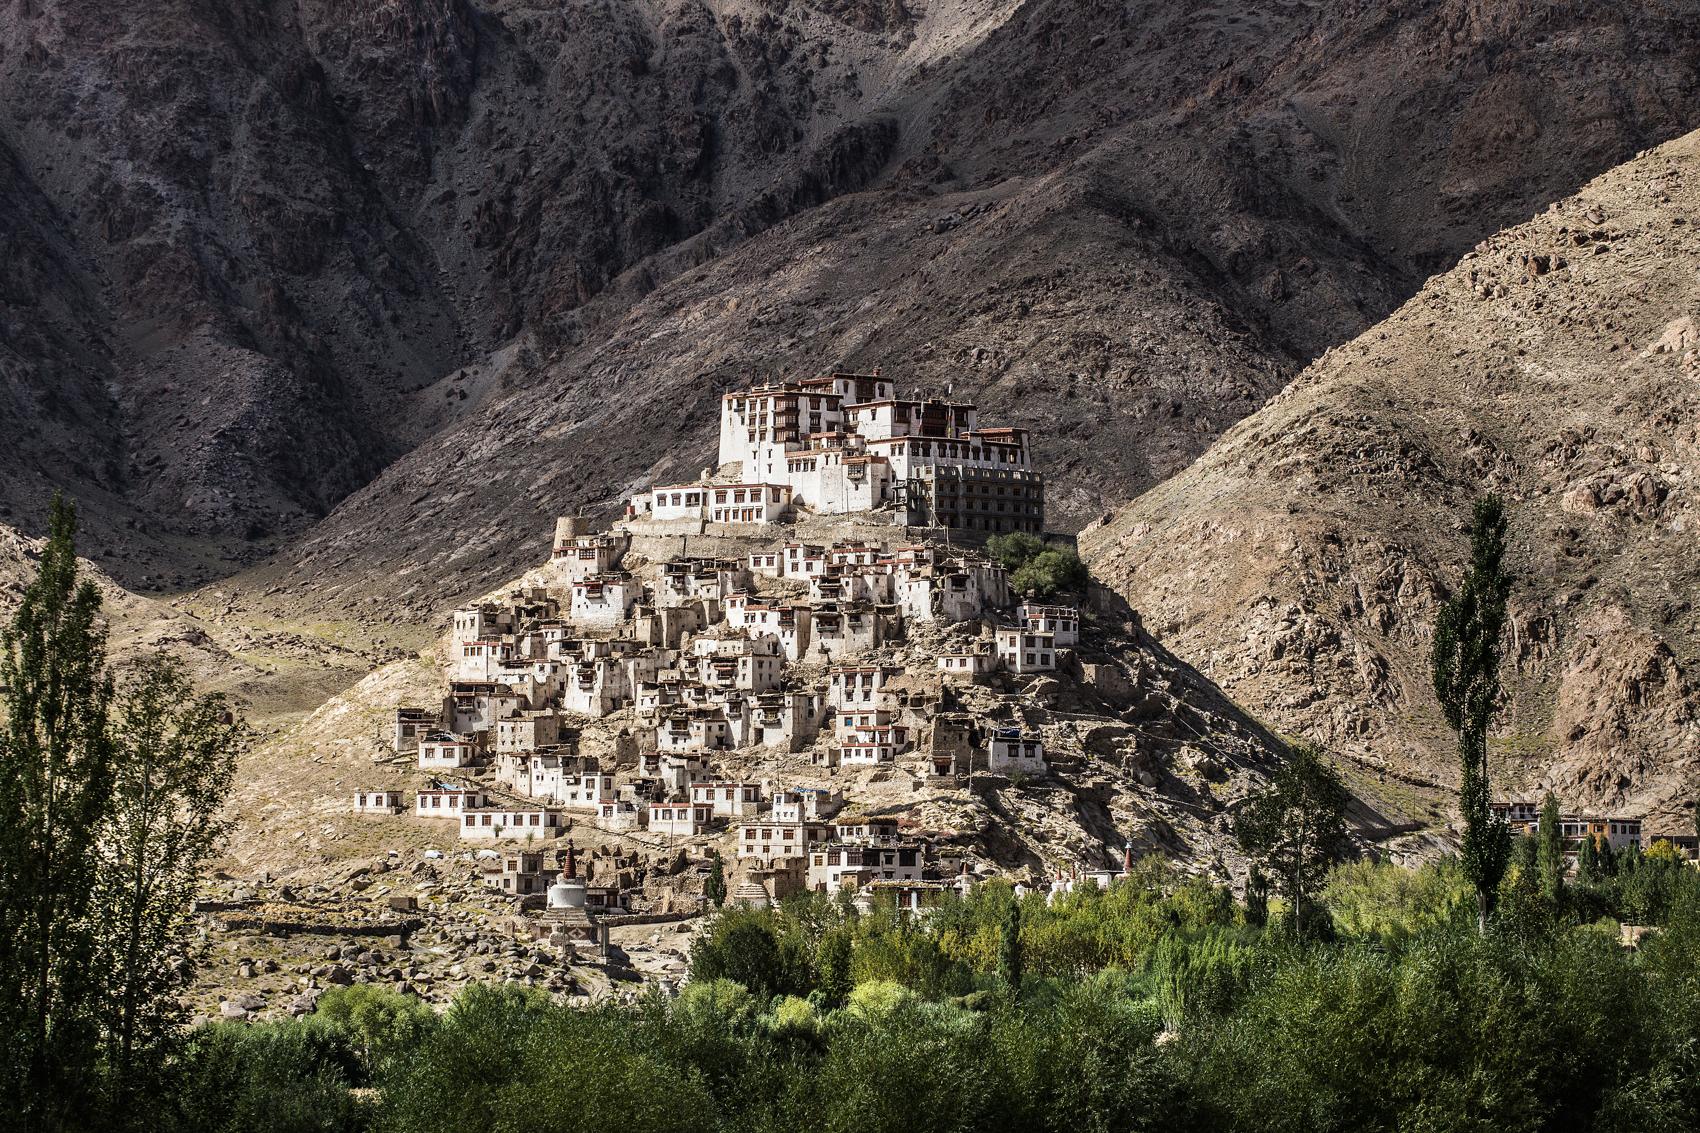 Ladakh monastery